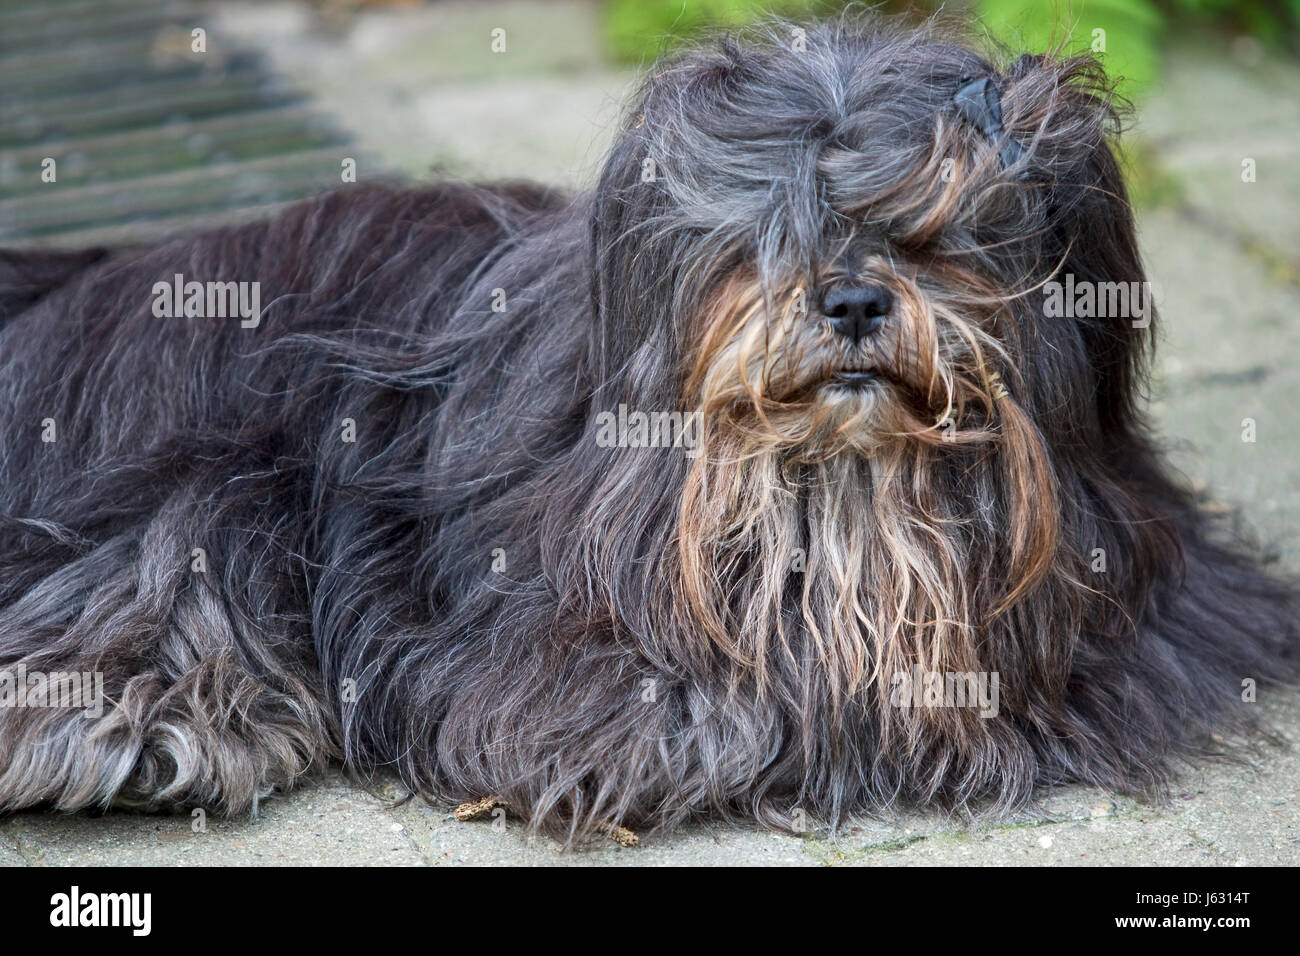 dog,animal,pet,quadruped,hairs,skin,dog,hairdo,unkemptly,struppelig,langhaar Stock Photo